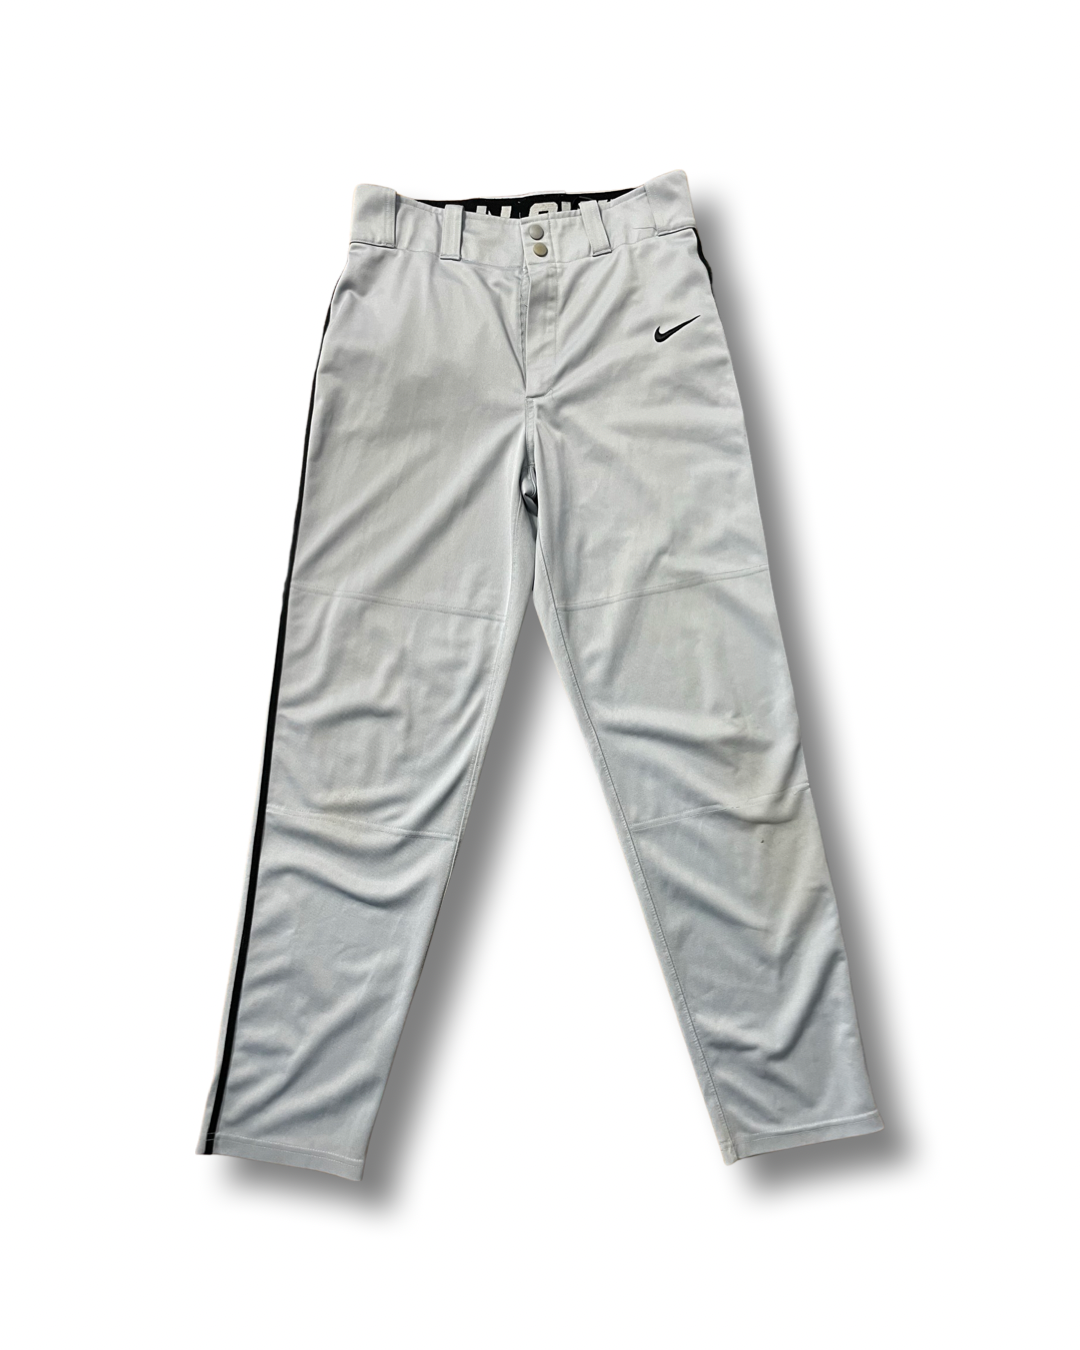 Grey Nike Baseball Pants, Medium